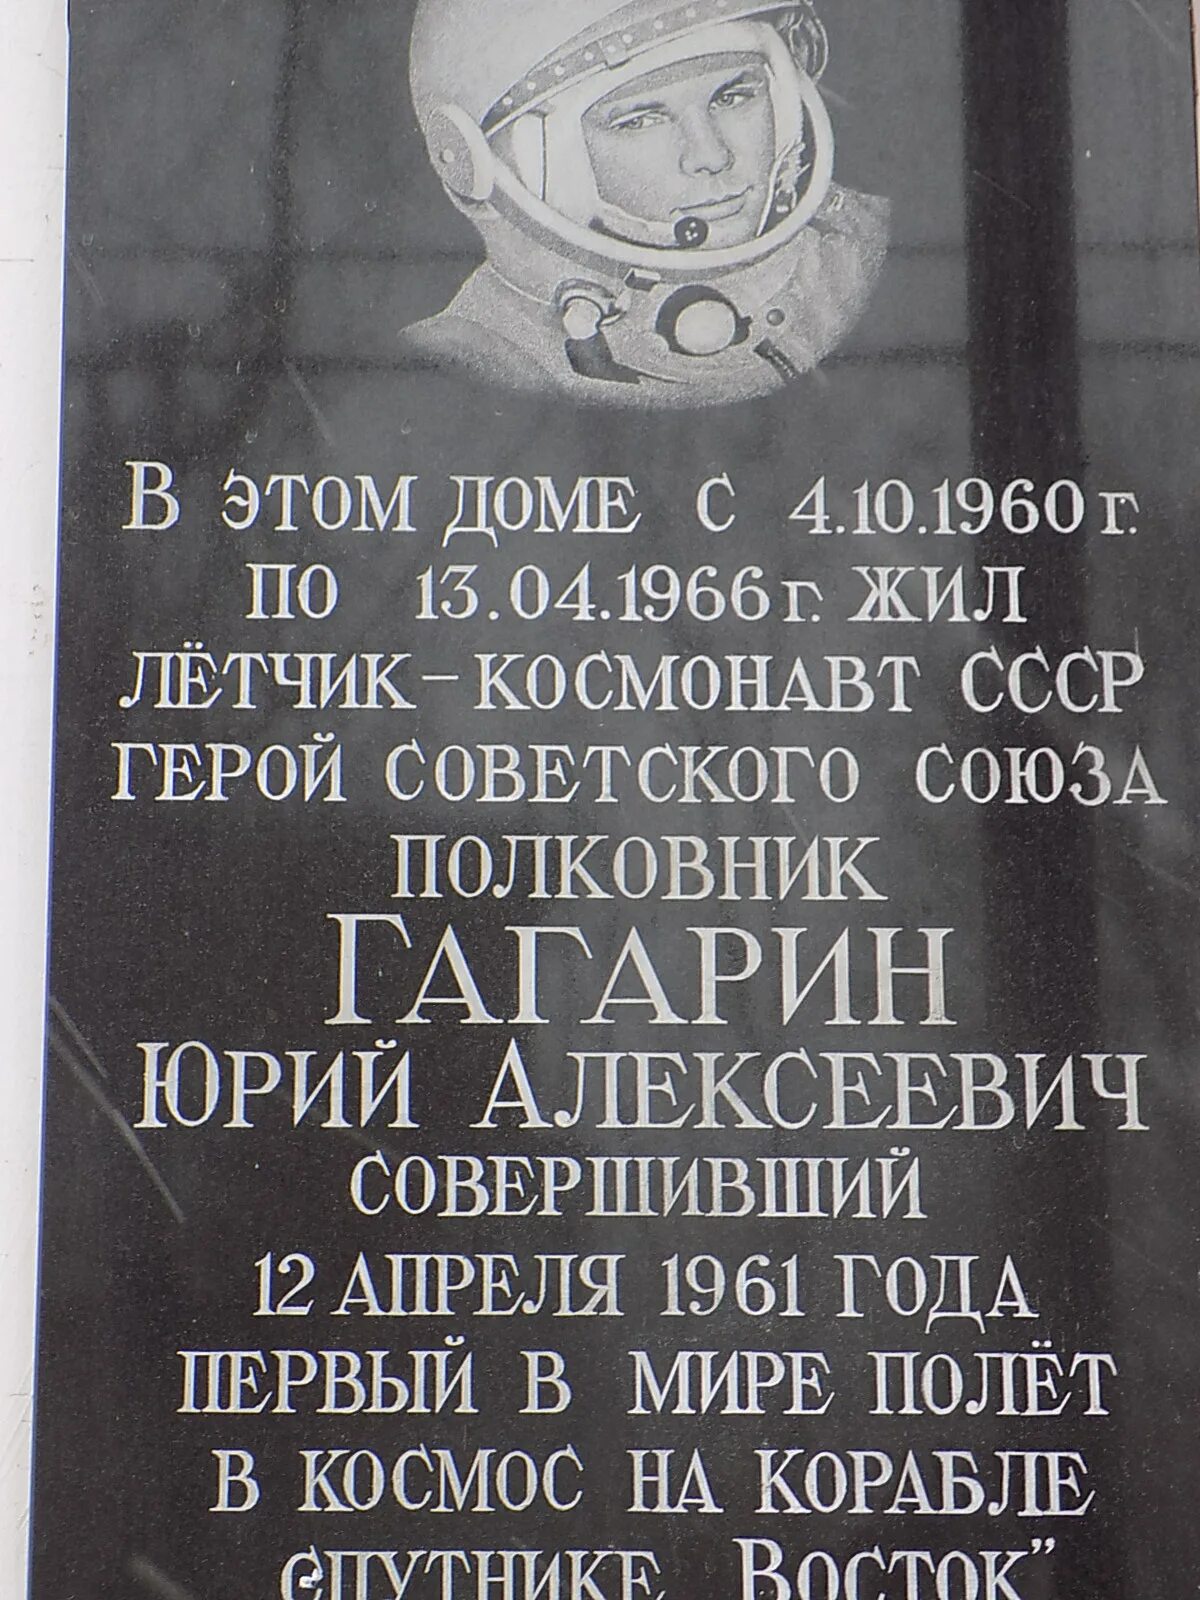 Где жил Гагарин. Гагарин в Чкаловском.